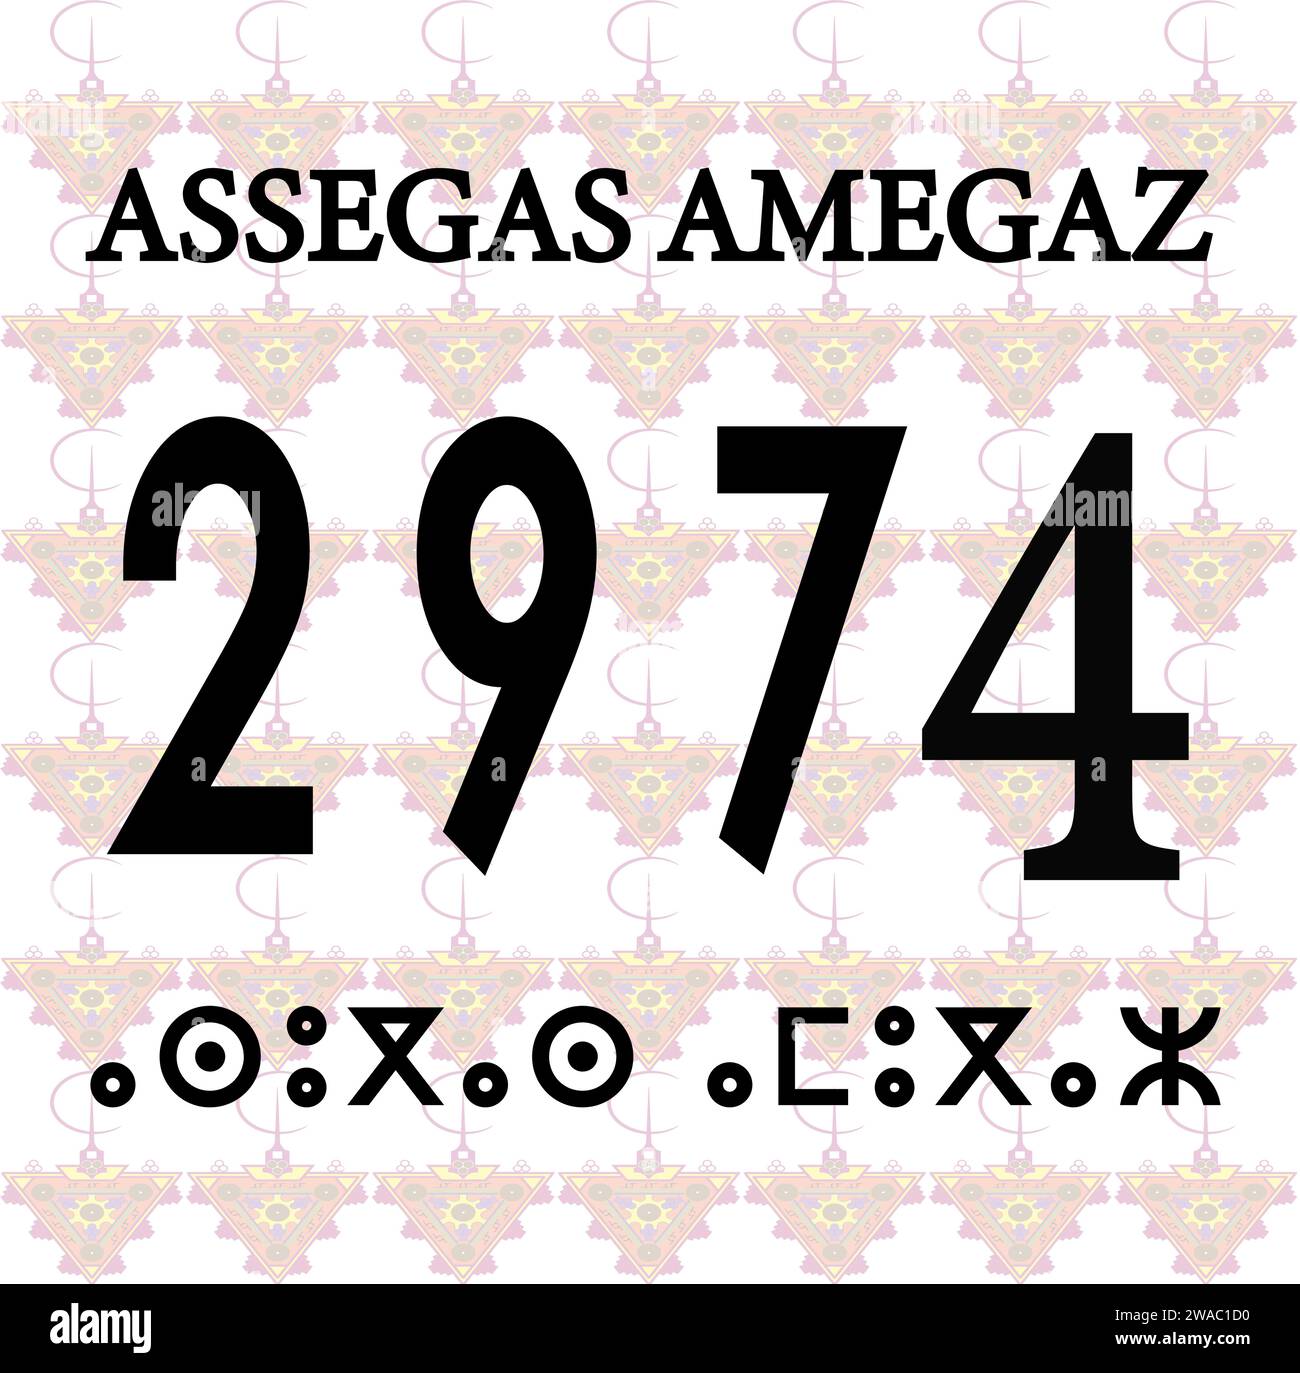 Nouvelle année amazigh 2974. Illustration vectorielle. Illustration de Vecteur